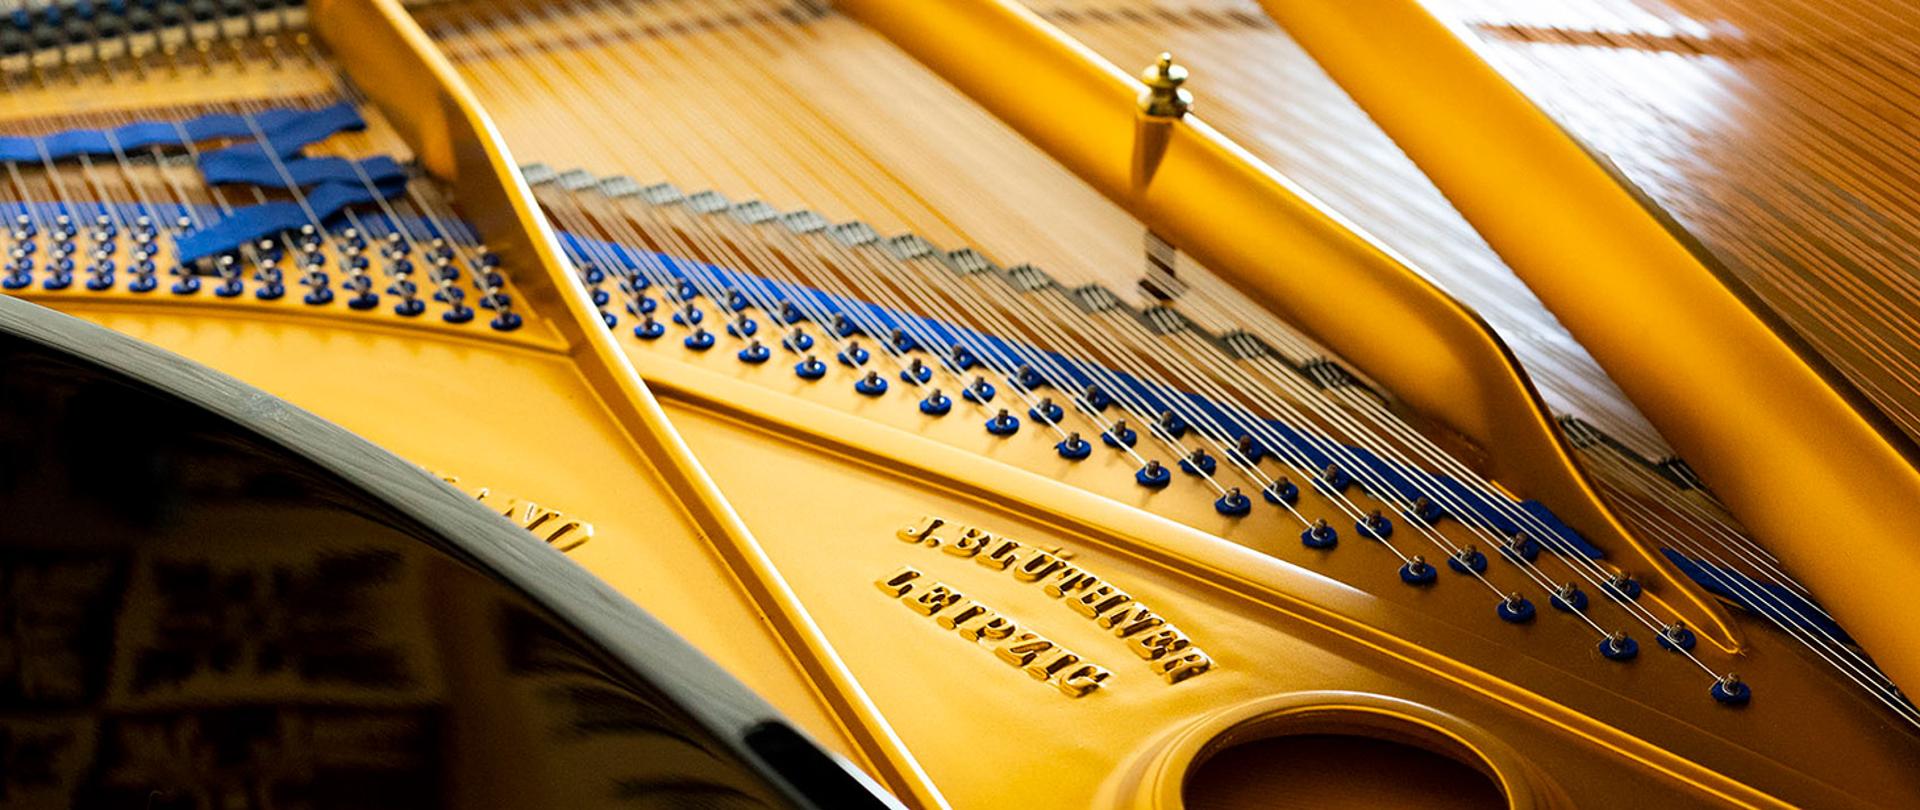 Zdjęcie przedstawia kadr na wnętrze fortepianu. Na zdjęciu widać złocistą stalową ramę fortepianu oraz struny. 